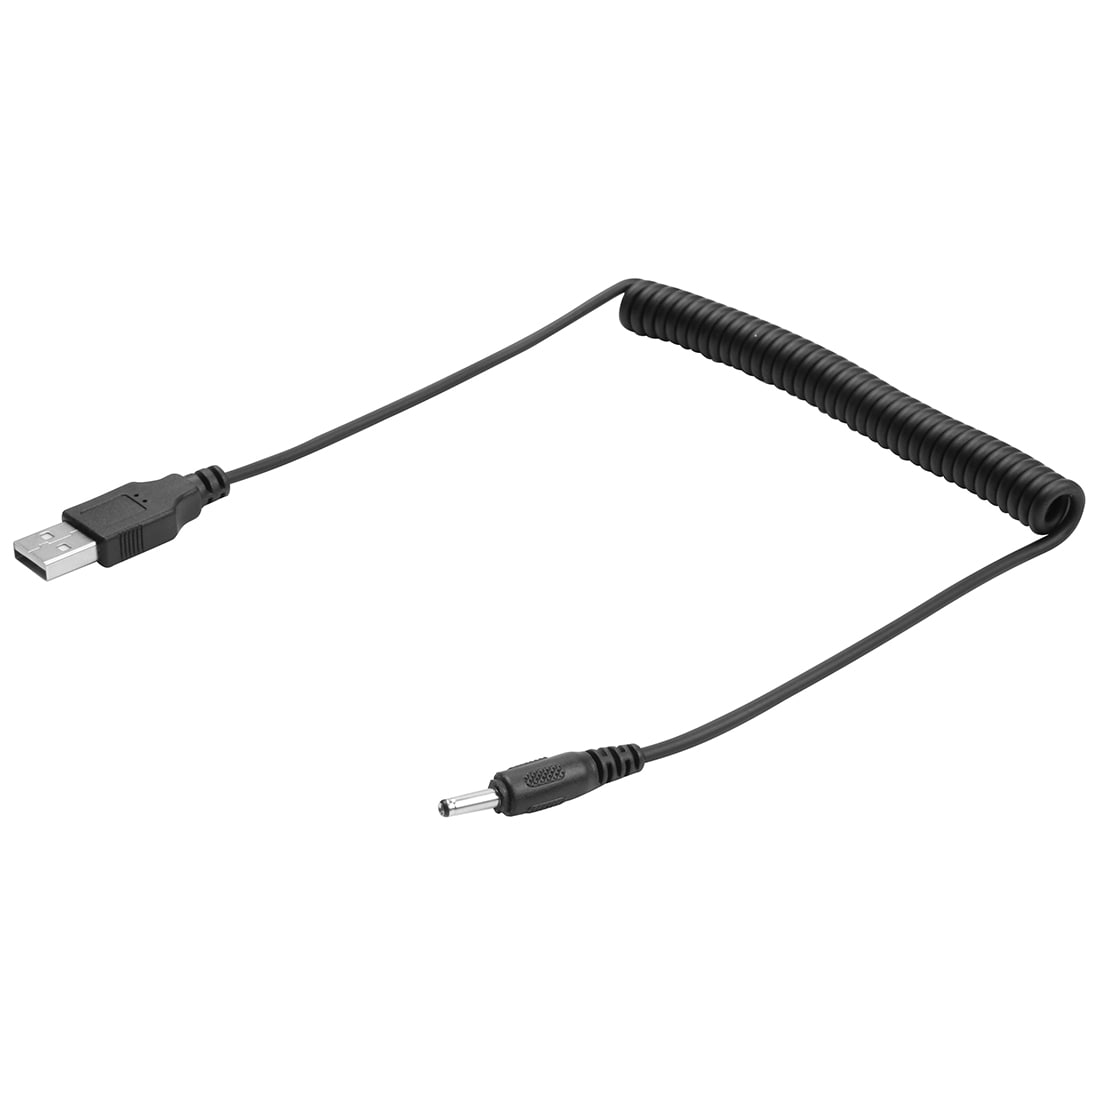 USB kabel met stroomvoorziening, 3,5mm ronde plug